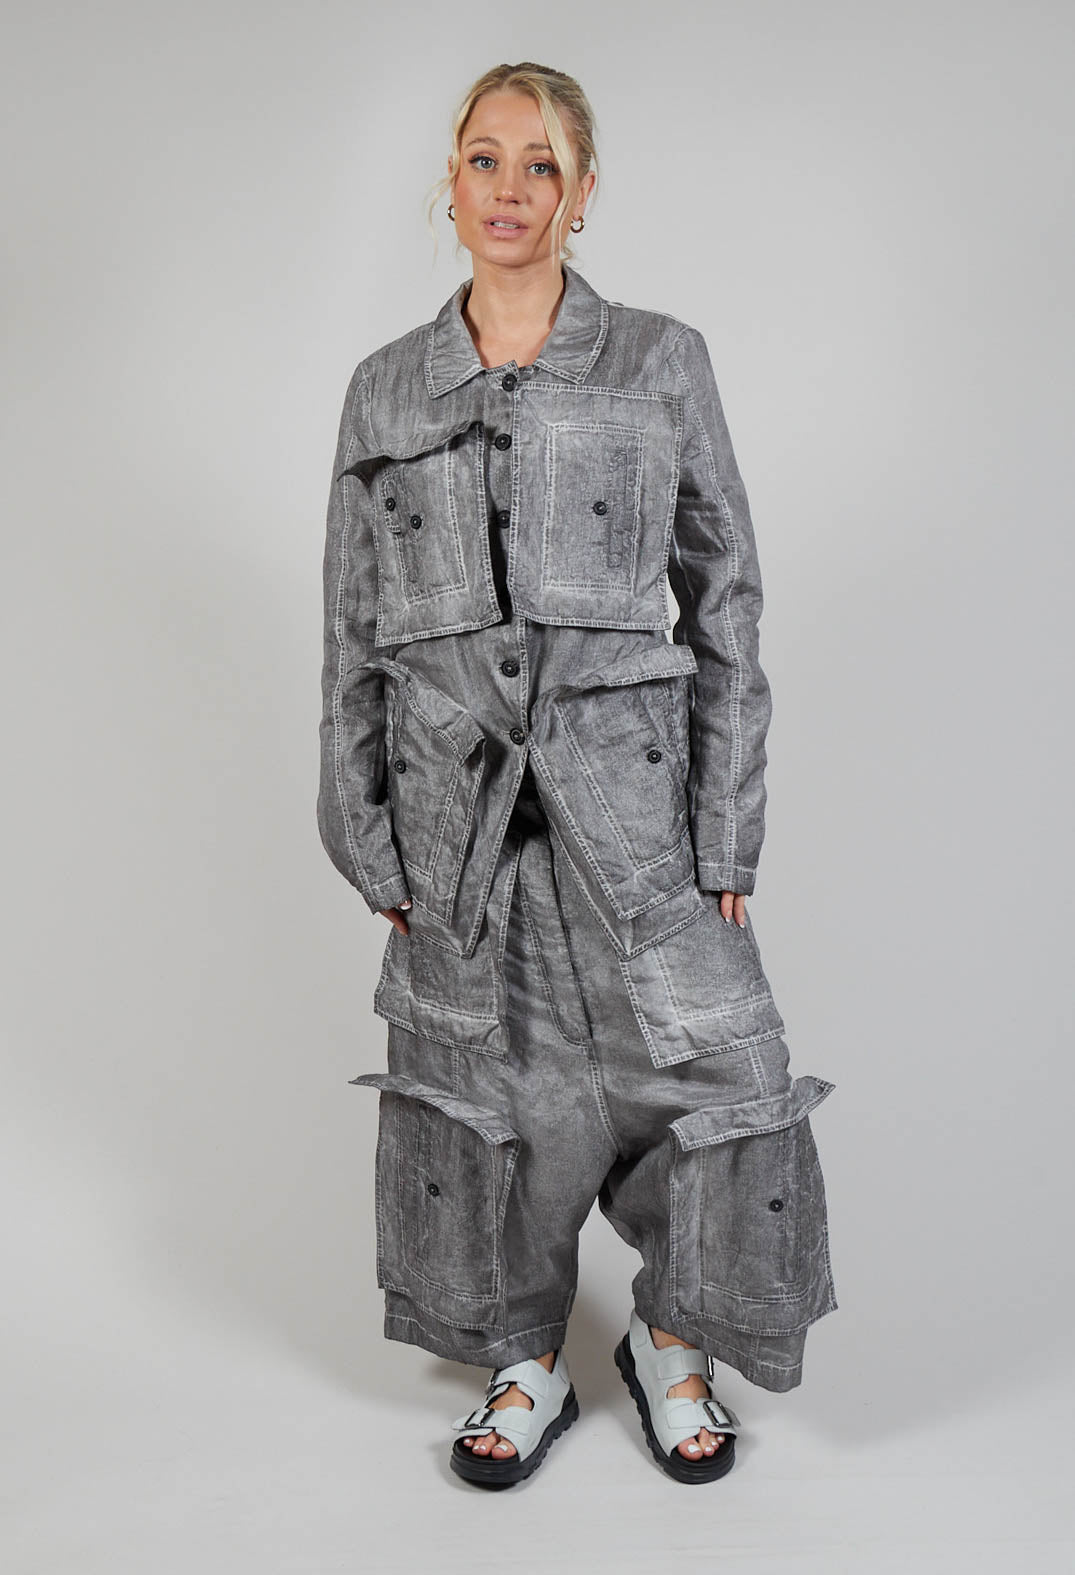 Textured Jacket in C.Coal 70% Cloud